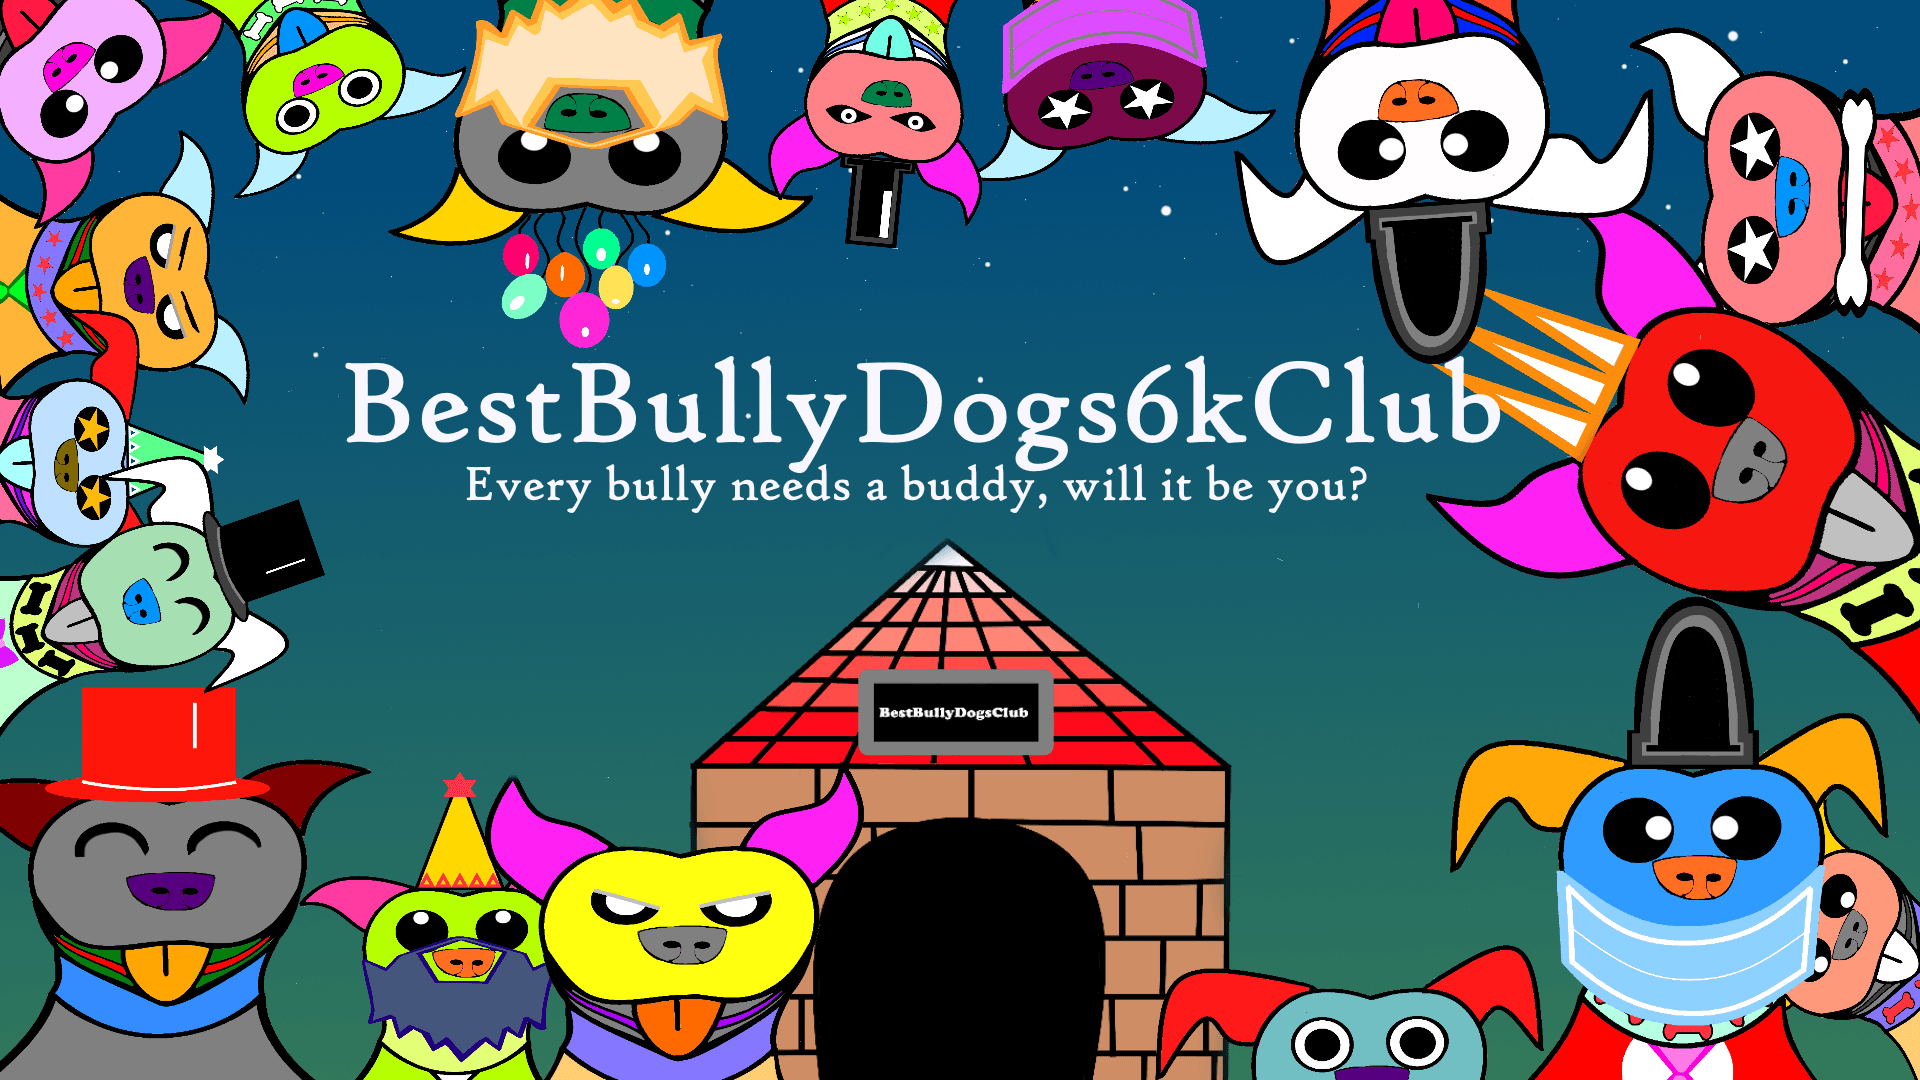 BestBullyDogs6kClub